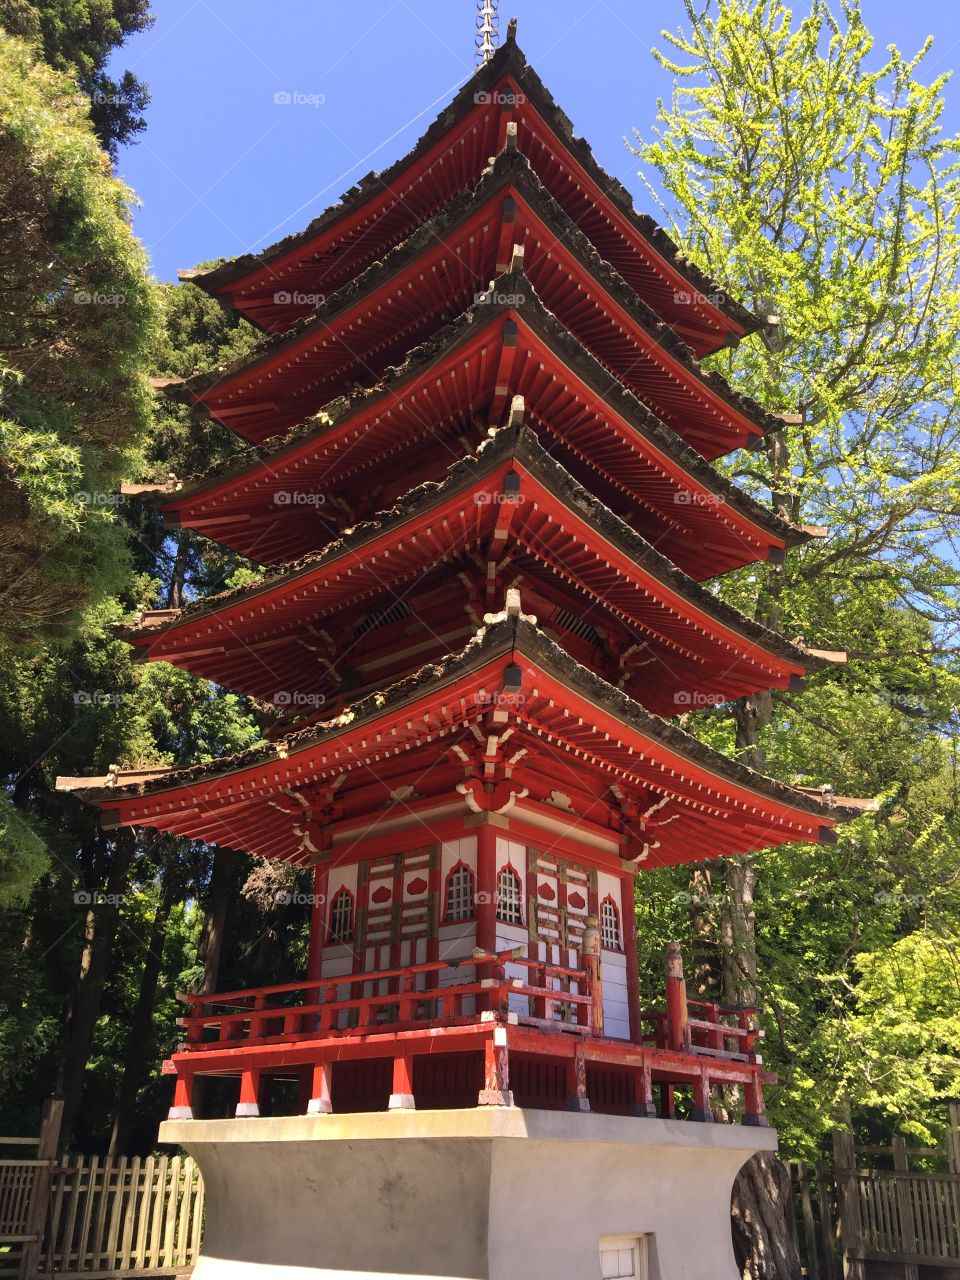 San Francisco Japanese Tea Garden 